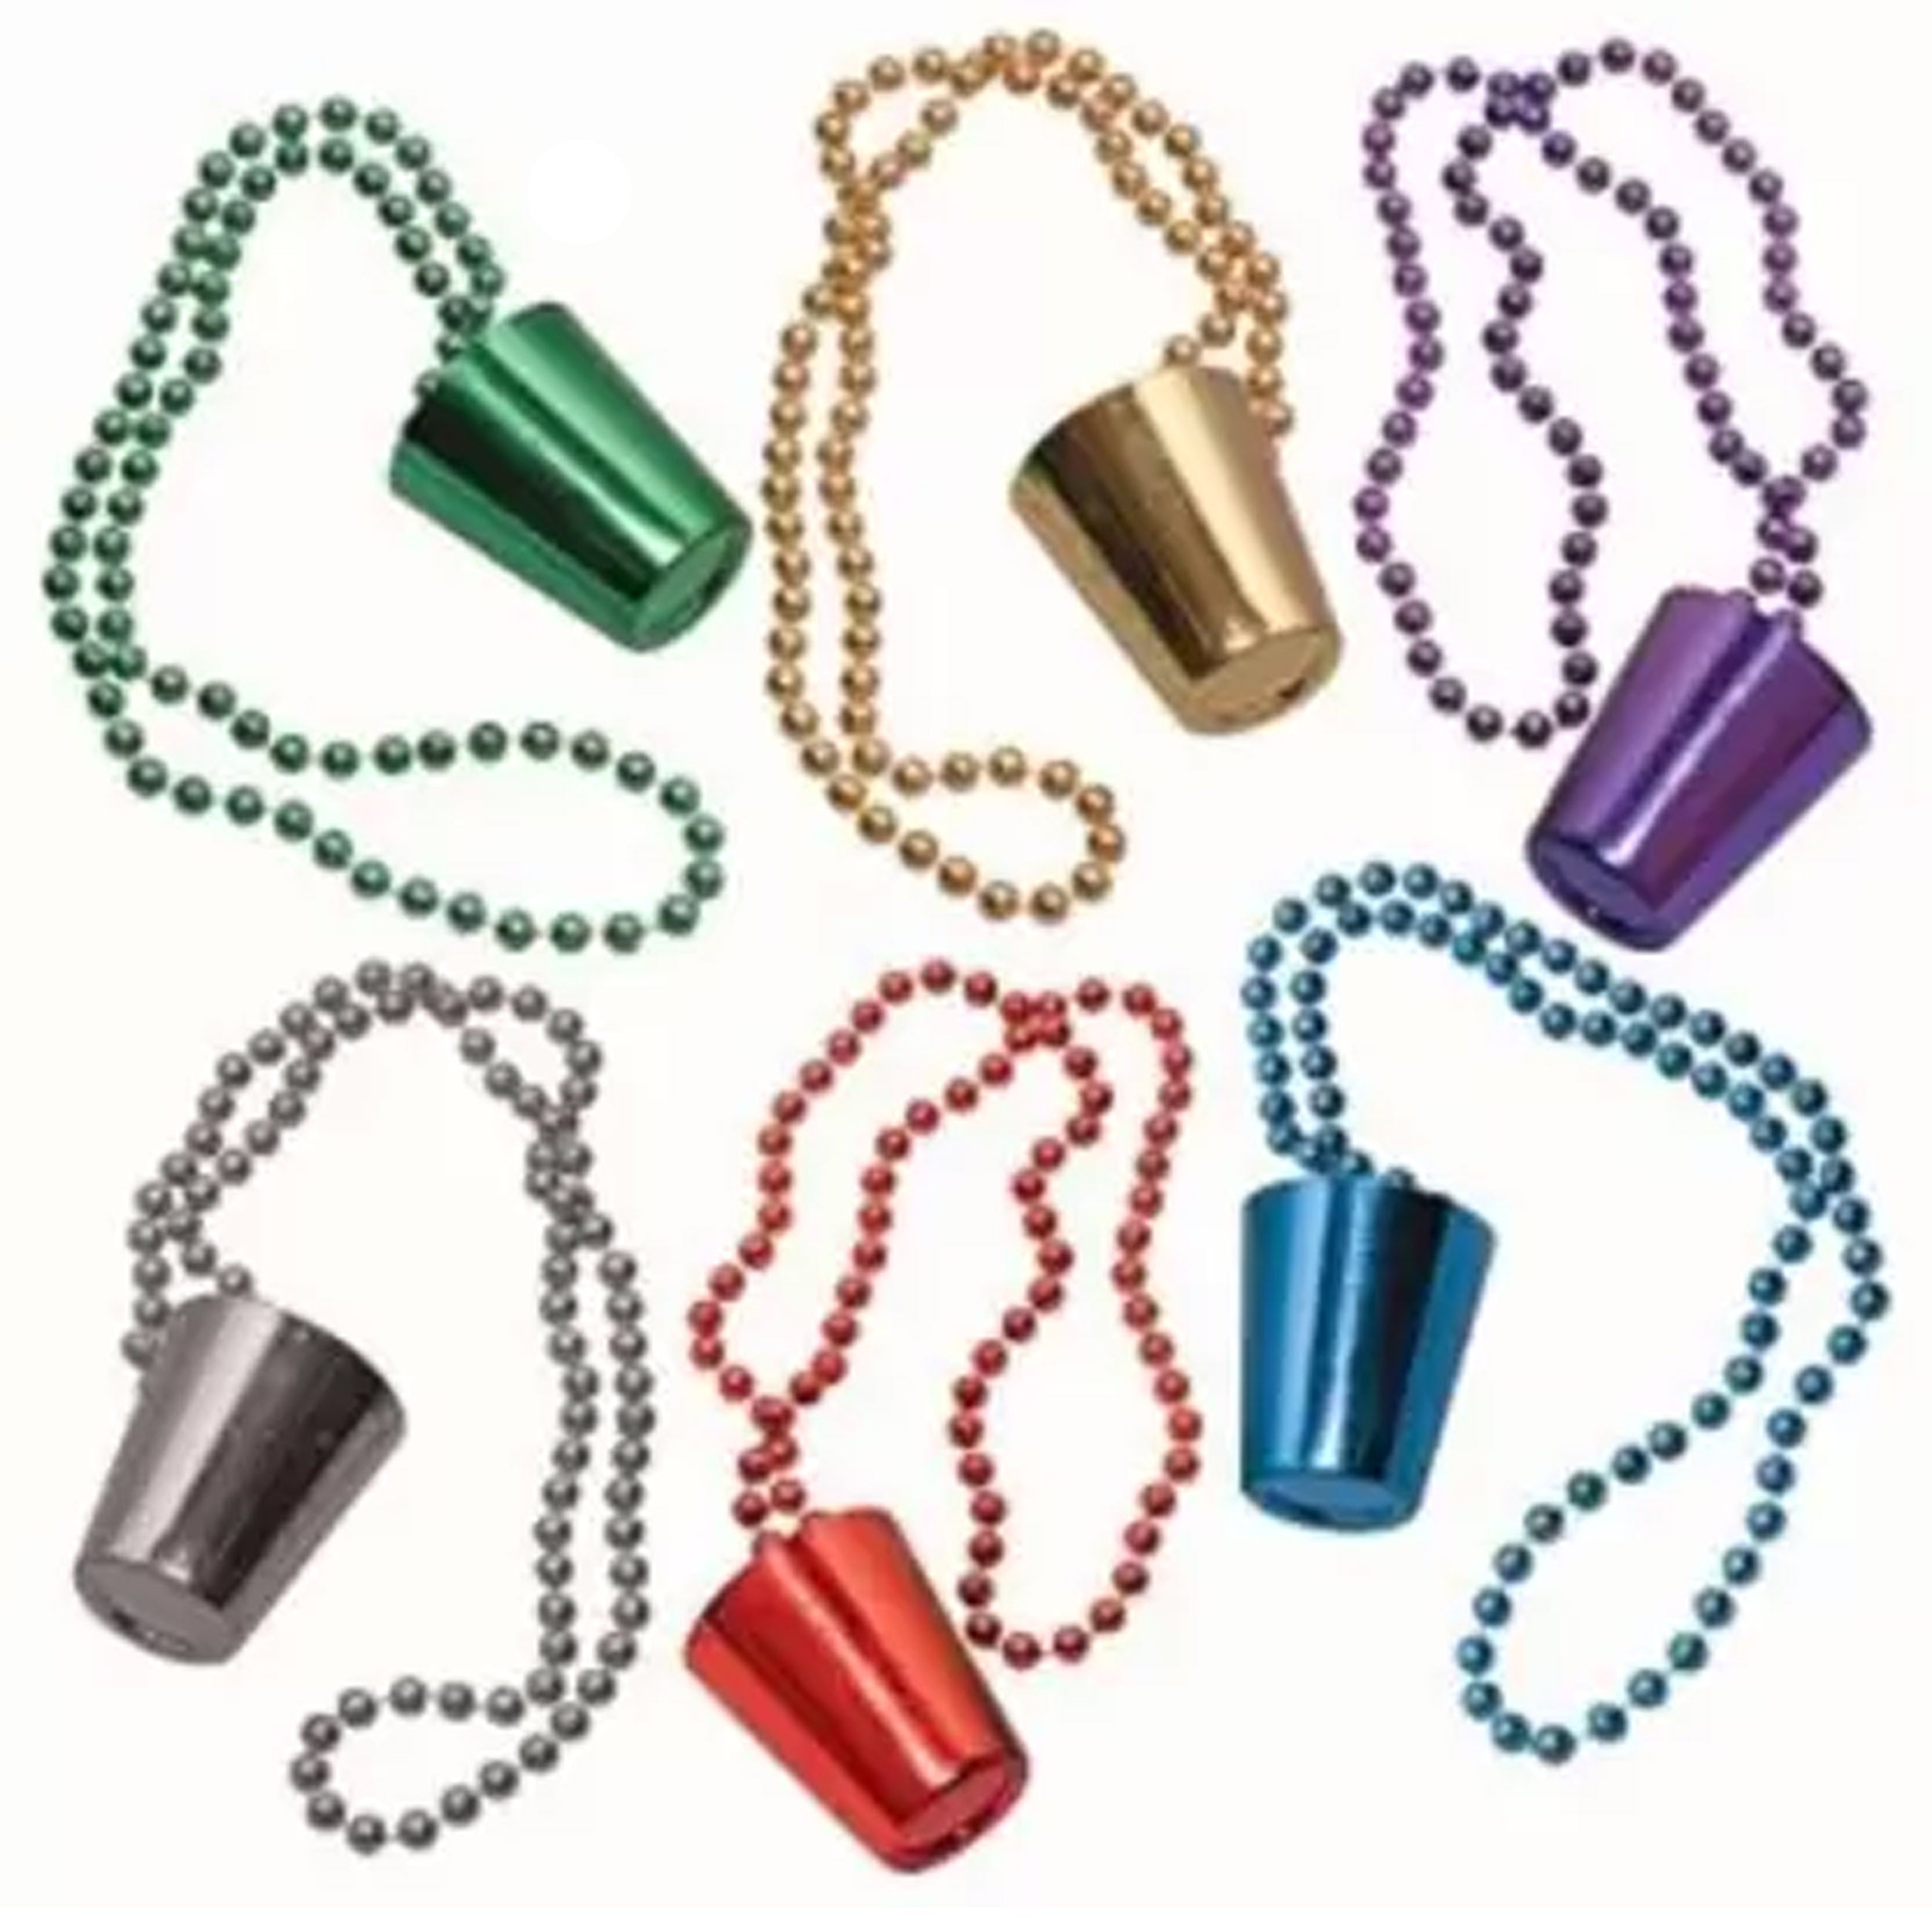 Glass Beads Necklaces kids toys (1 Dozen=$12.99)